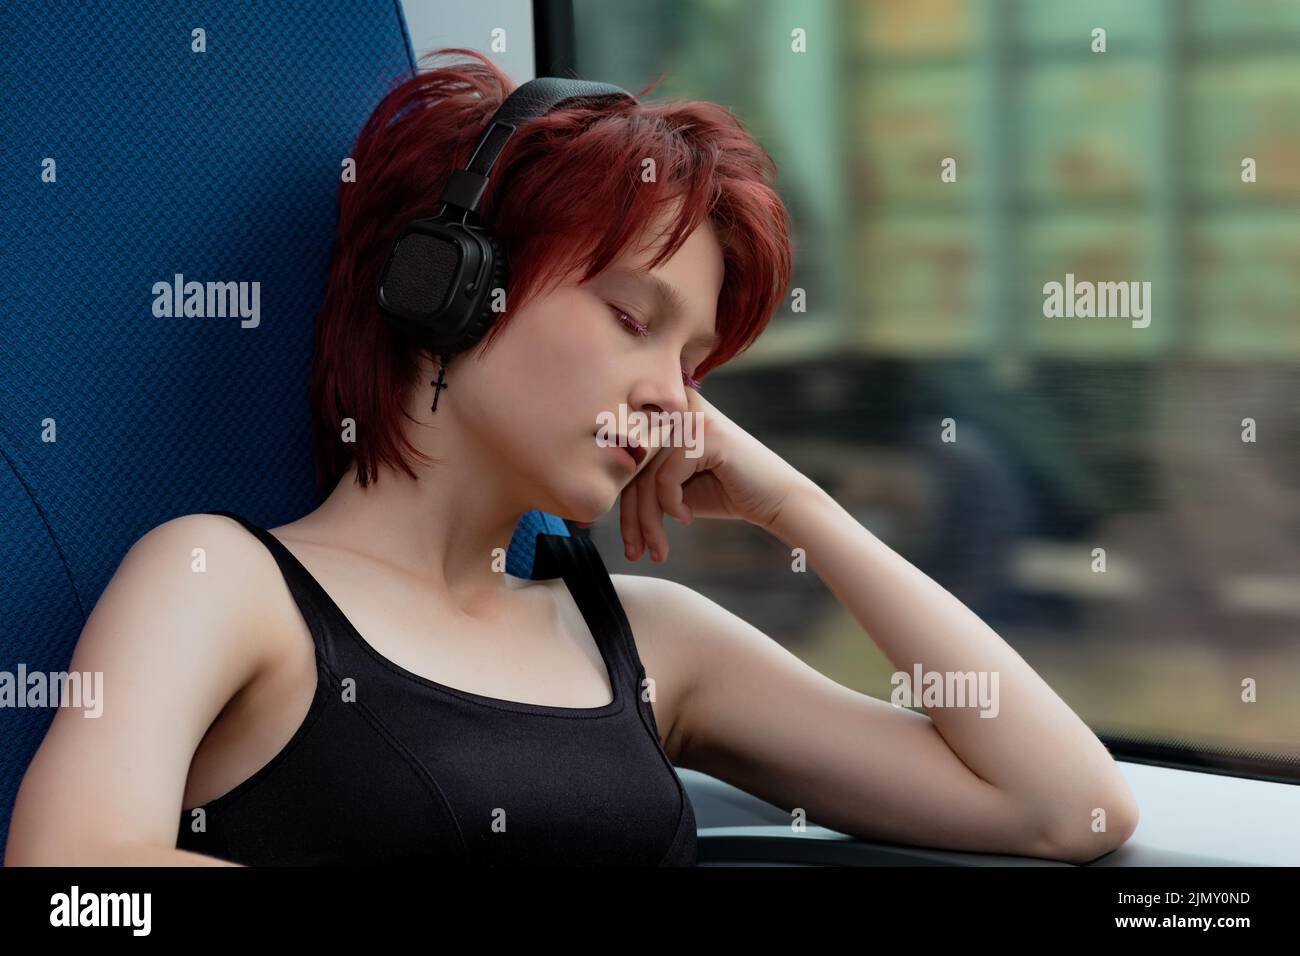 la giovane donna si è staccata in una carrozza di un treno suburbano in movimento, ascoltando la musica Foto Stock